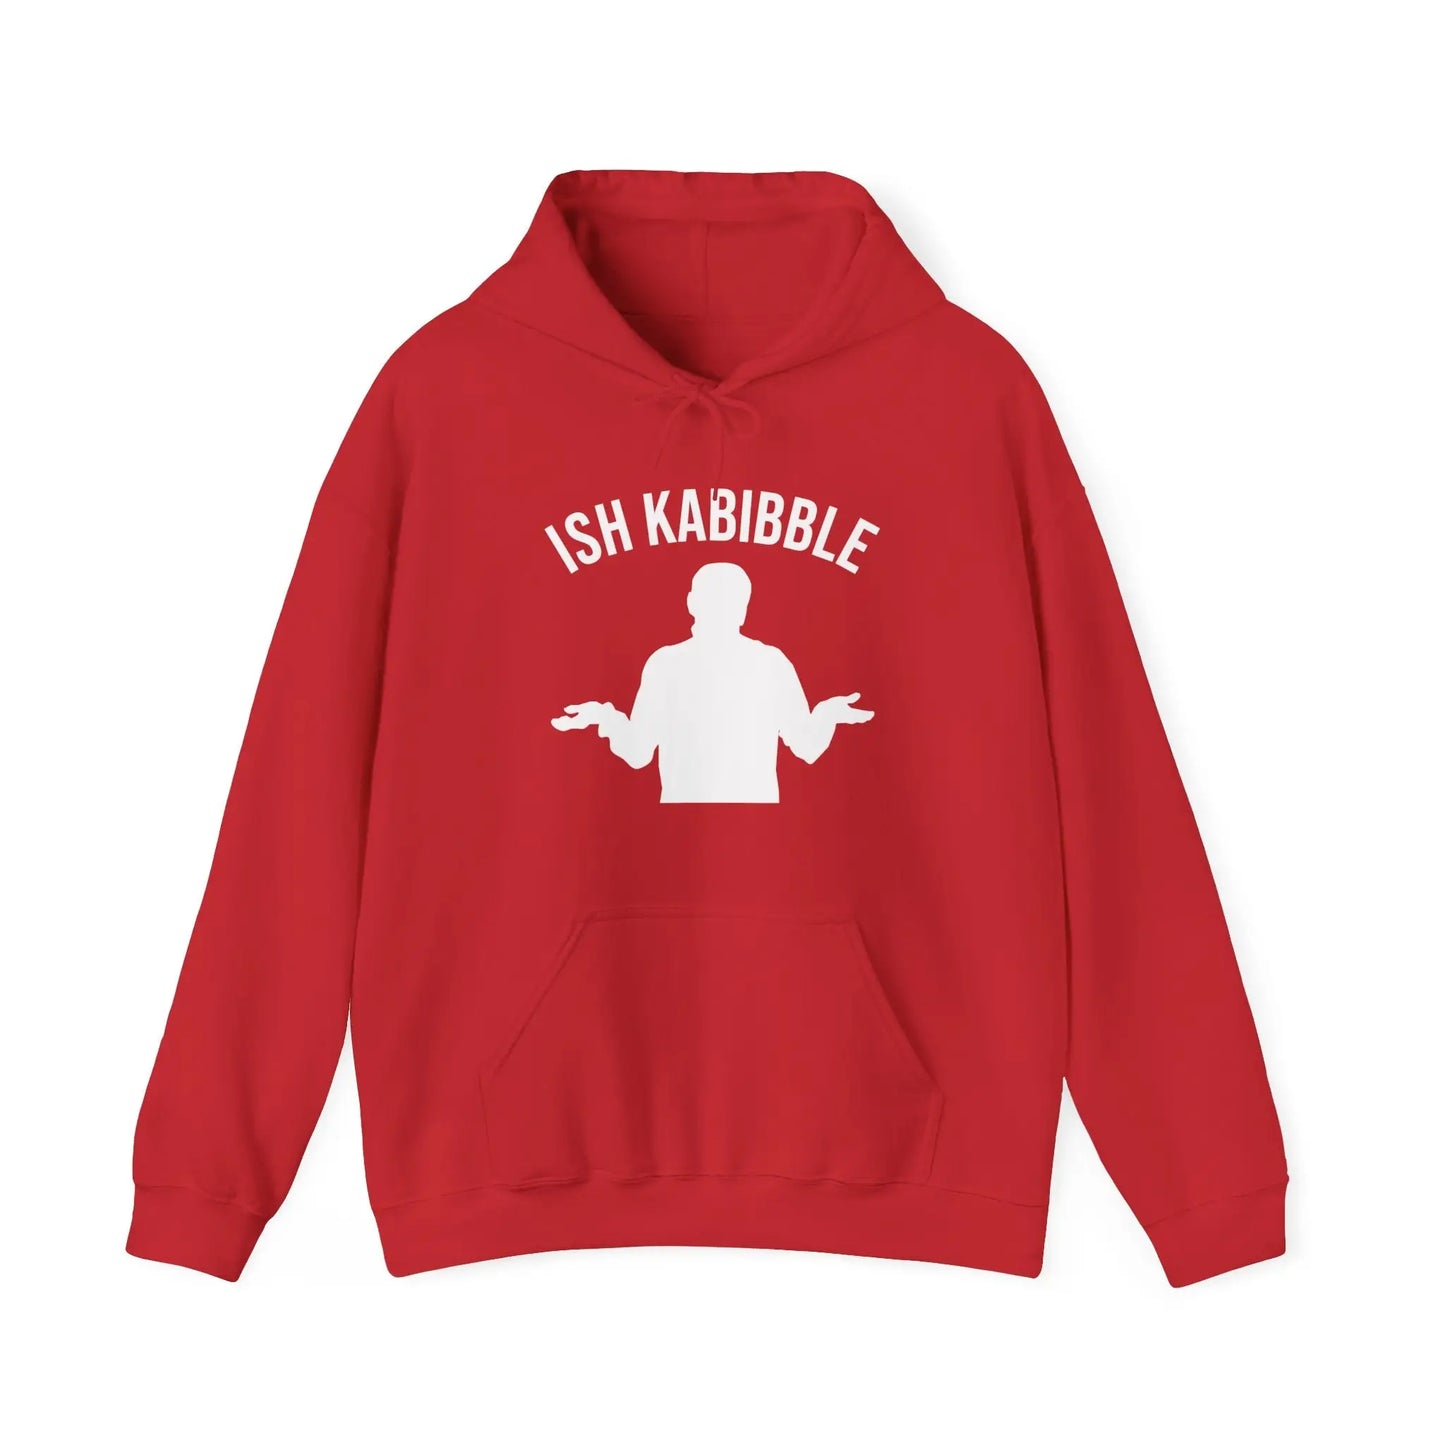 Ish Kabibble Men's Hooded Sweatshirt - Wicked Tees